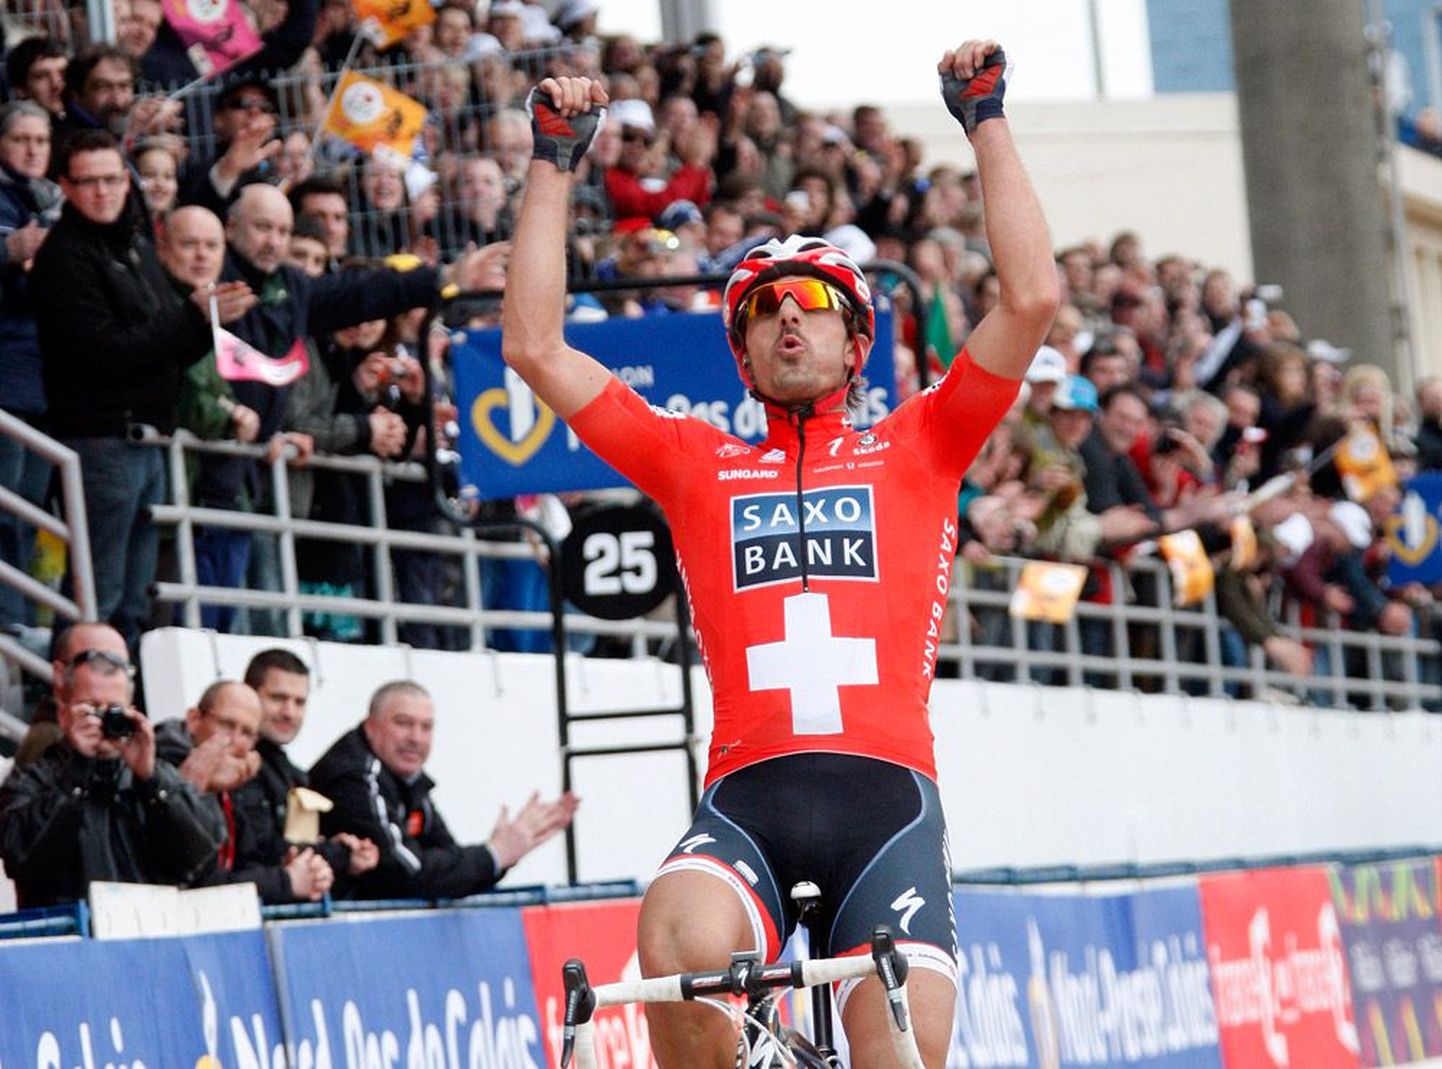 Tänavusel Flandria ning Pariisi–Roubaix’ ühepäevasõitudel imelisi sõite näidanud šveitslane Fabian Cancellara tekitas itaallastes arvamuse, justkui kasutaks ta motoriseeritud jalgratast. Mees ise lükkas need arvamused kategooriliselt ümber.